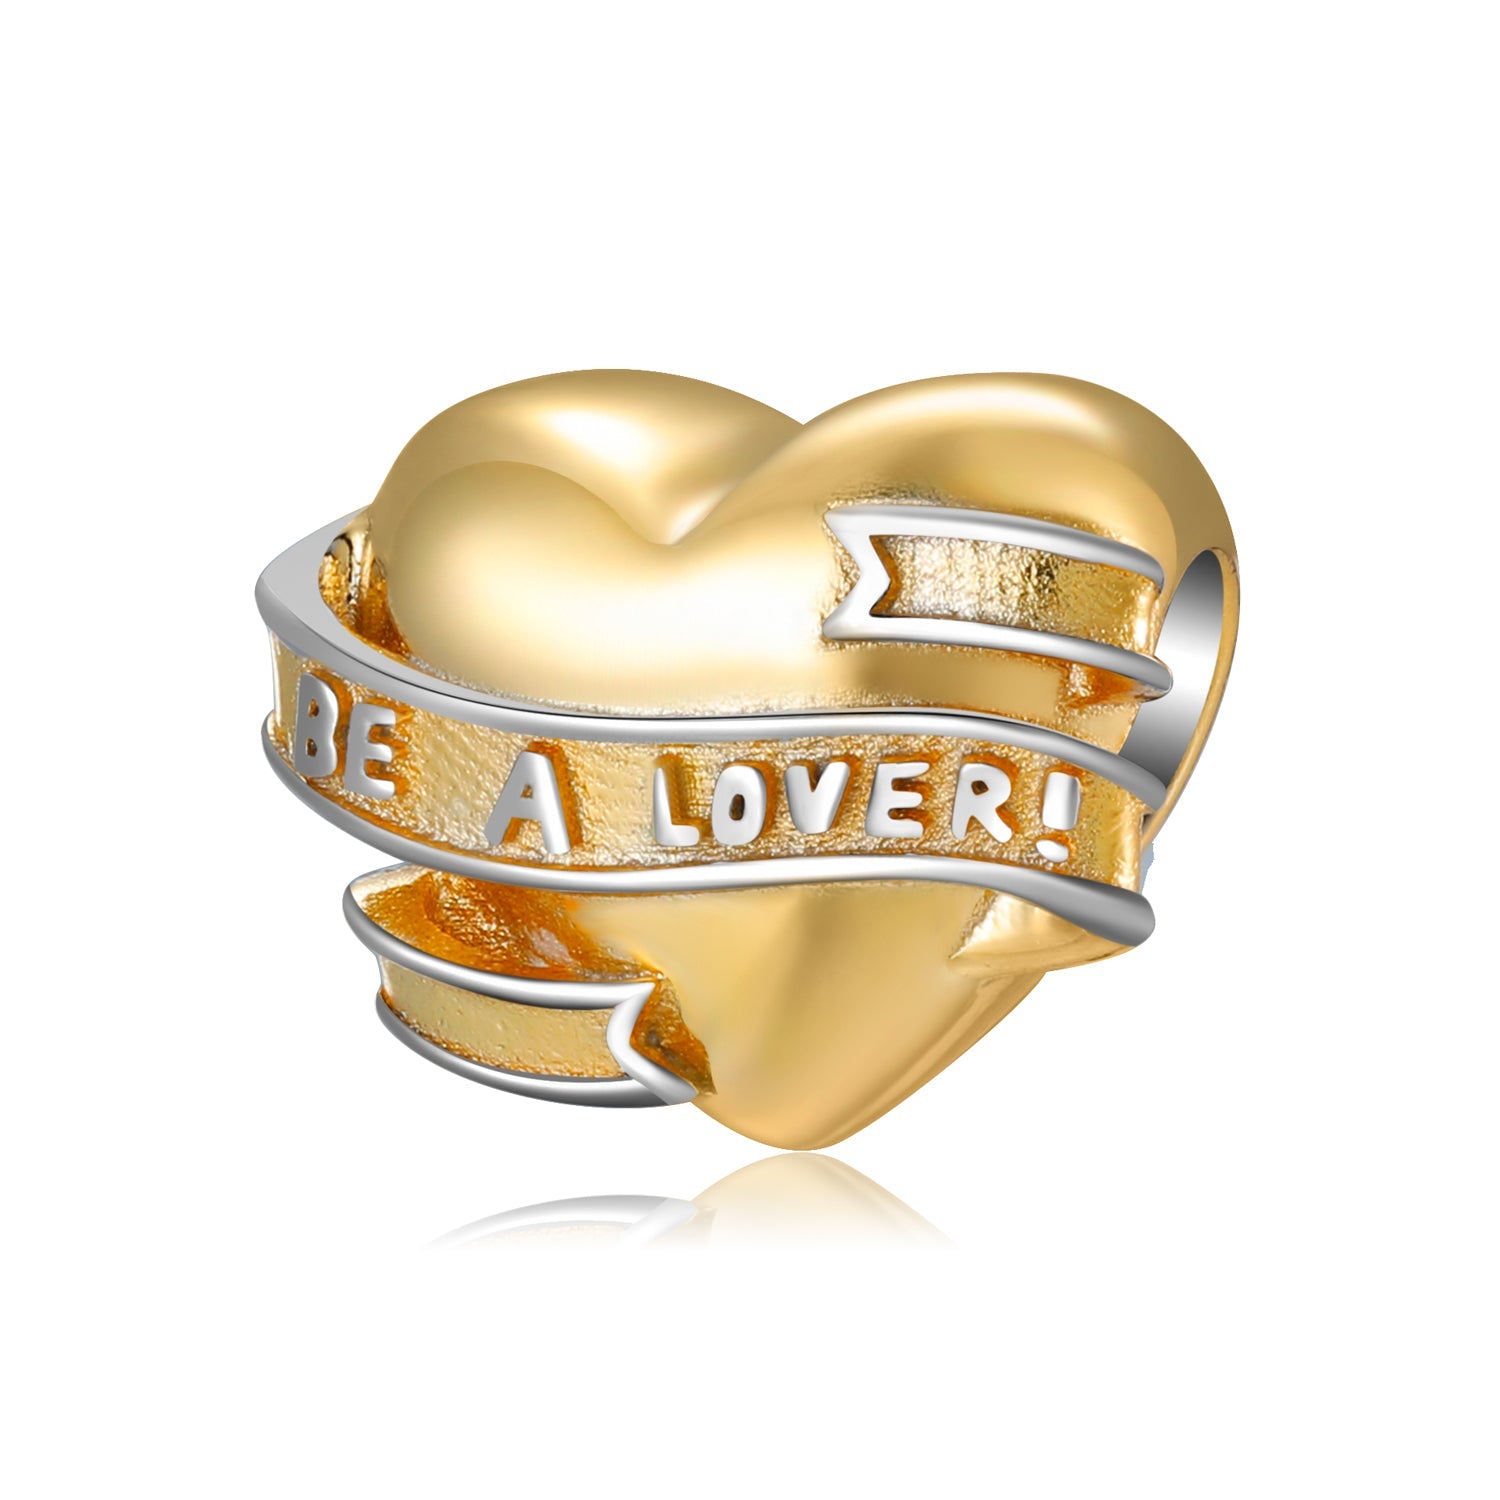 Golden Heart “Be a Lover”